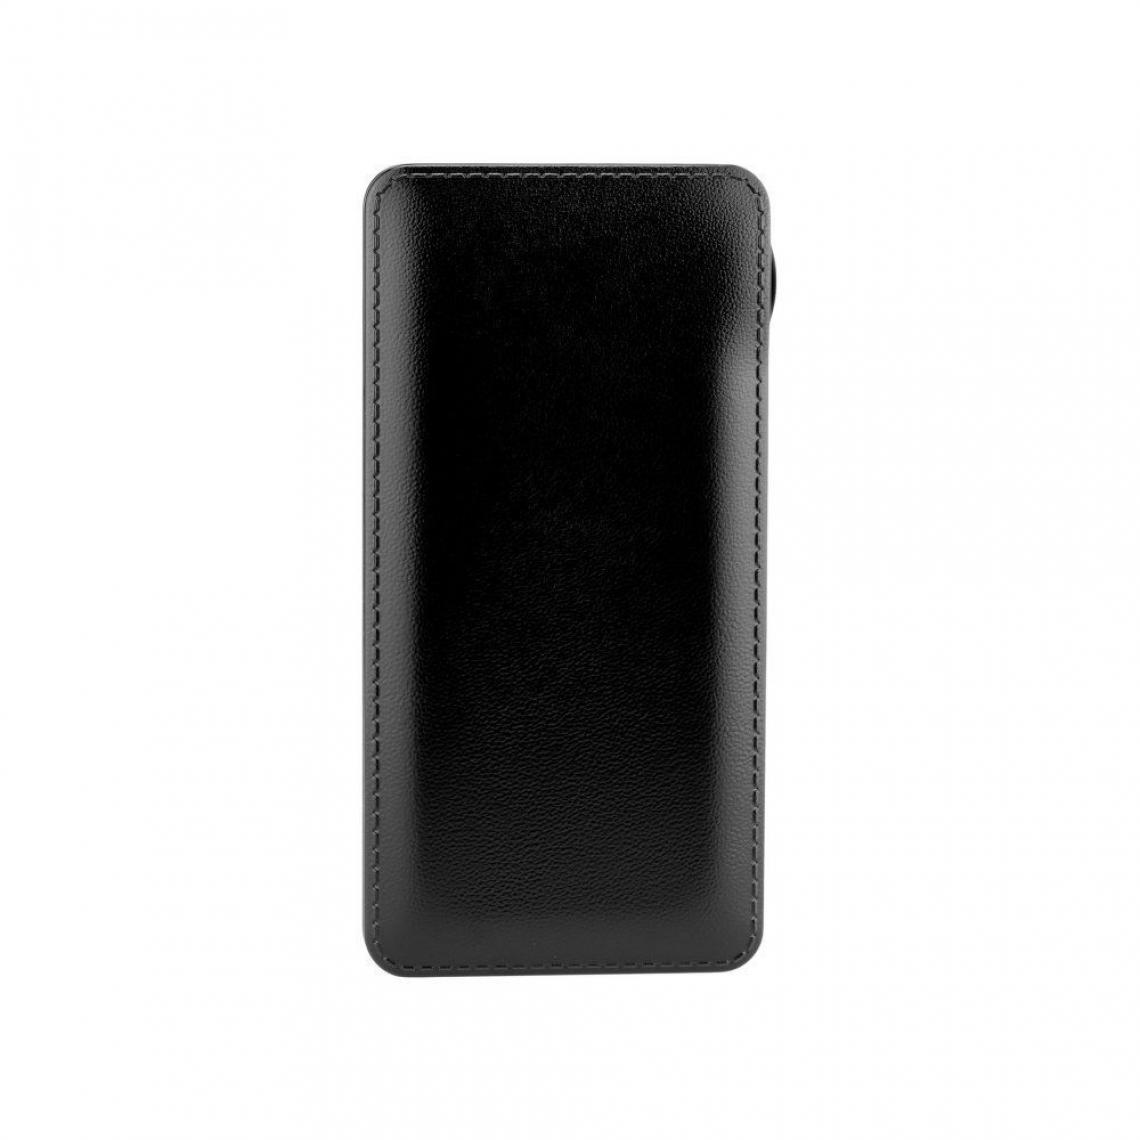 Ozzzo - Chargeur batterie externe 30000 mAh powerbank ozzzo noir pour Samsung Galaxy M10 - Autres accessoires smartphone